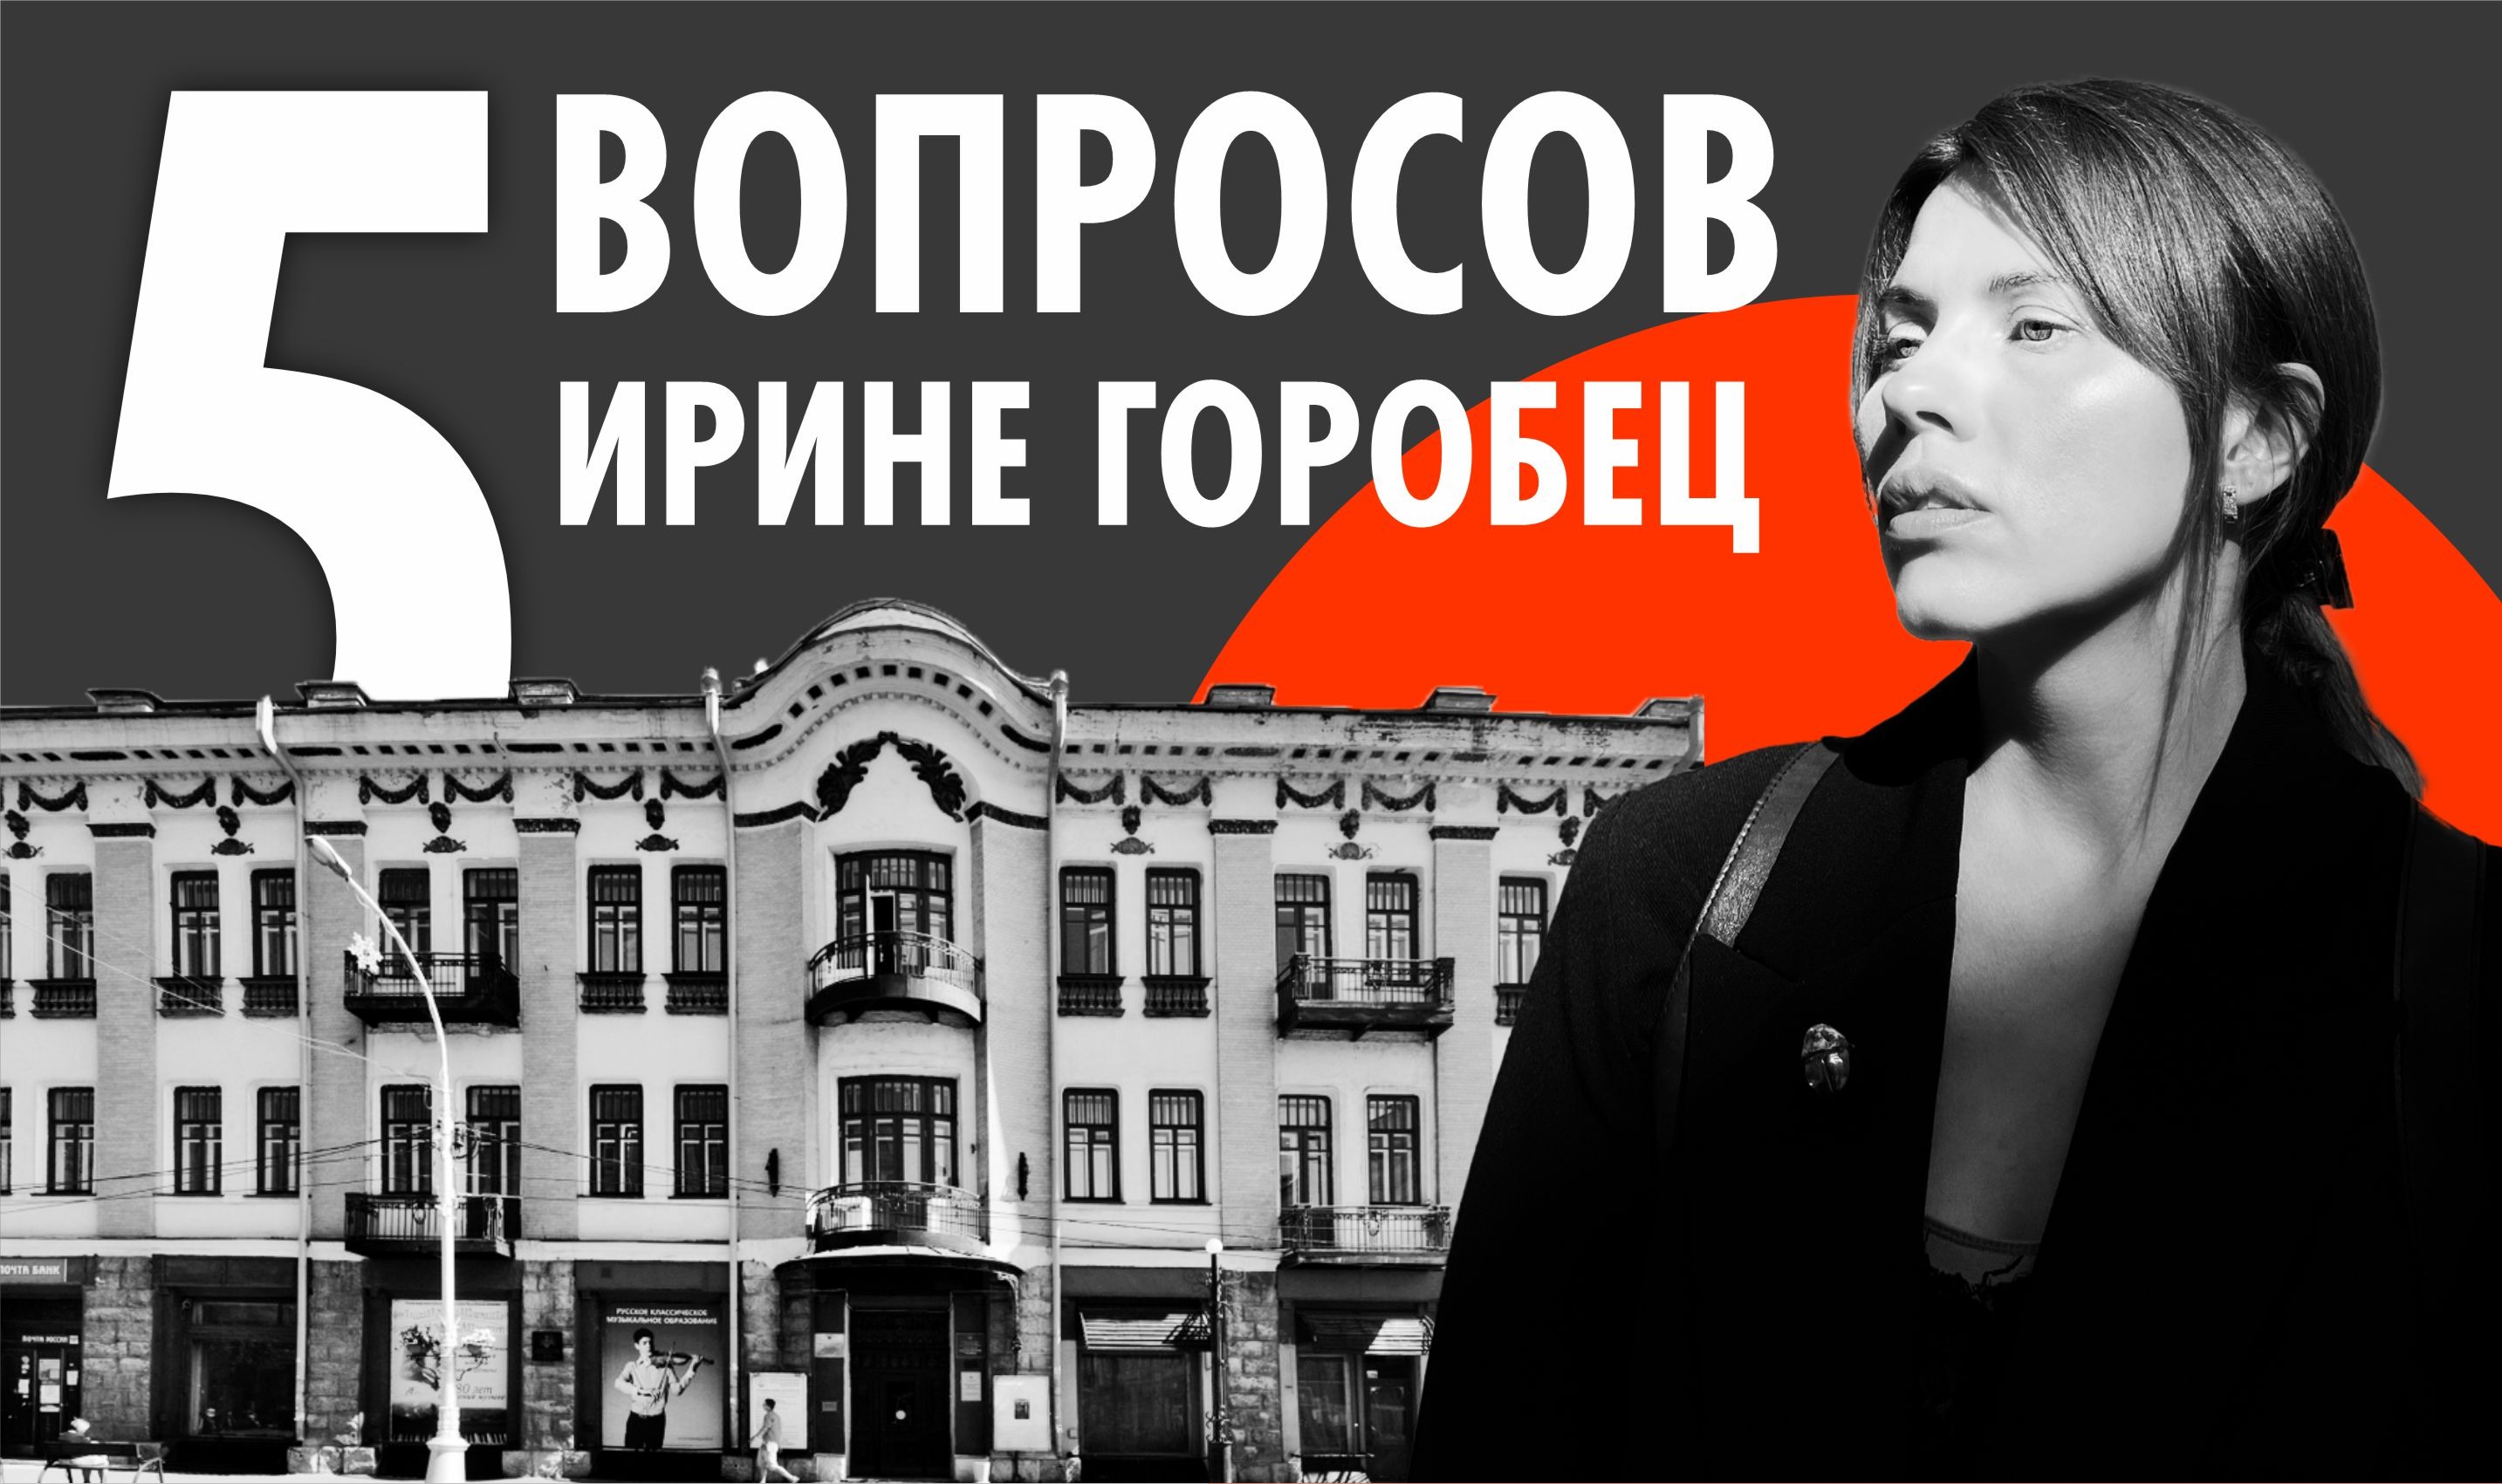  Ирина Горобец: Иркутск — не только история, но и стиль